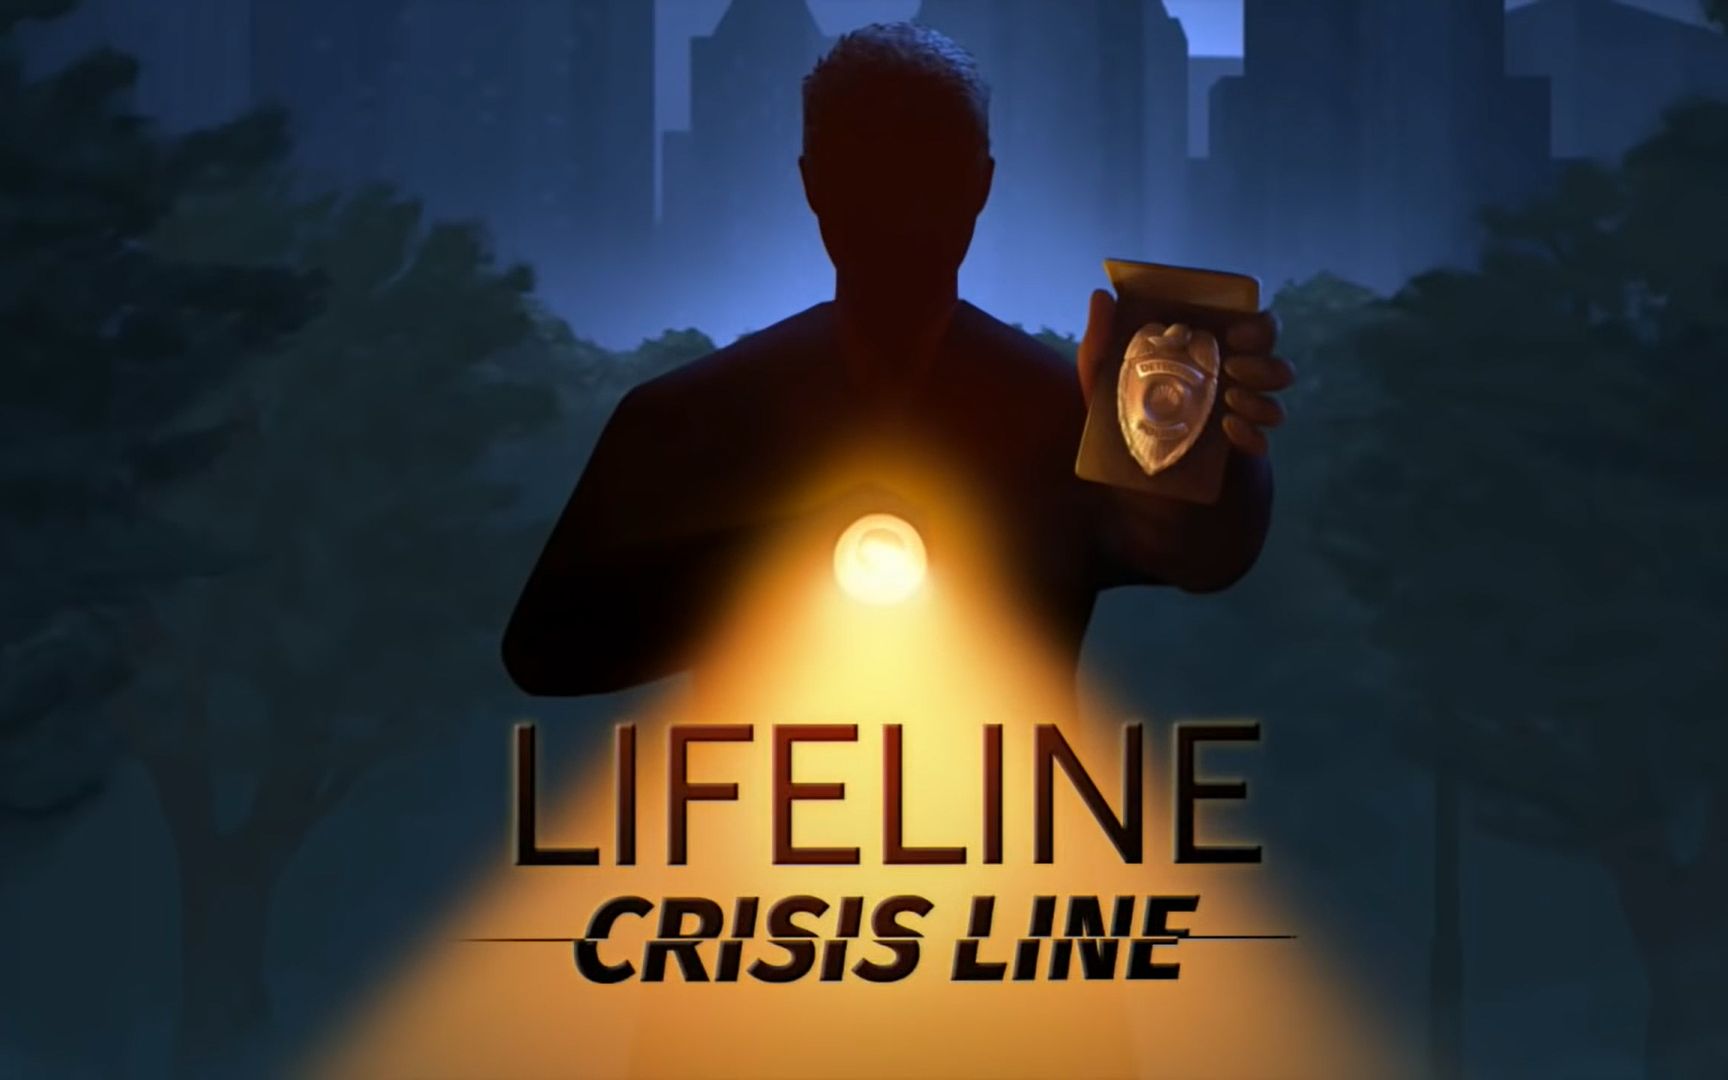 lifeline游戏全系列